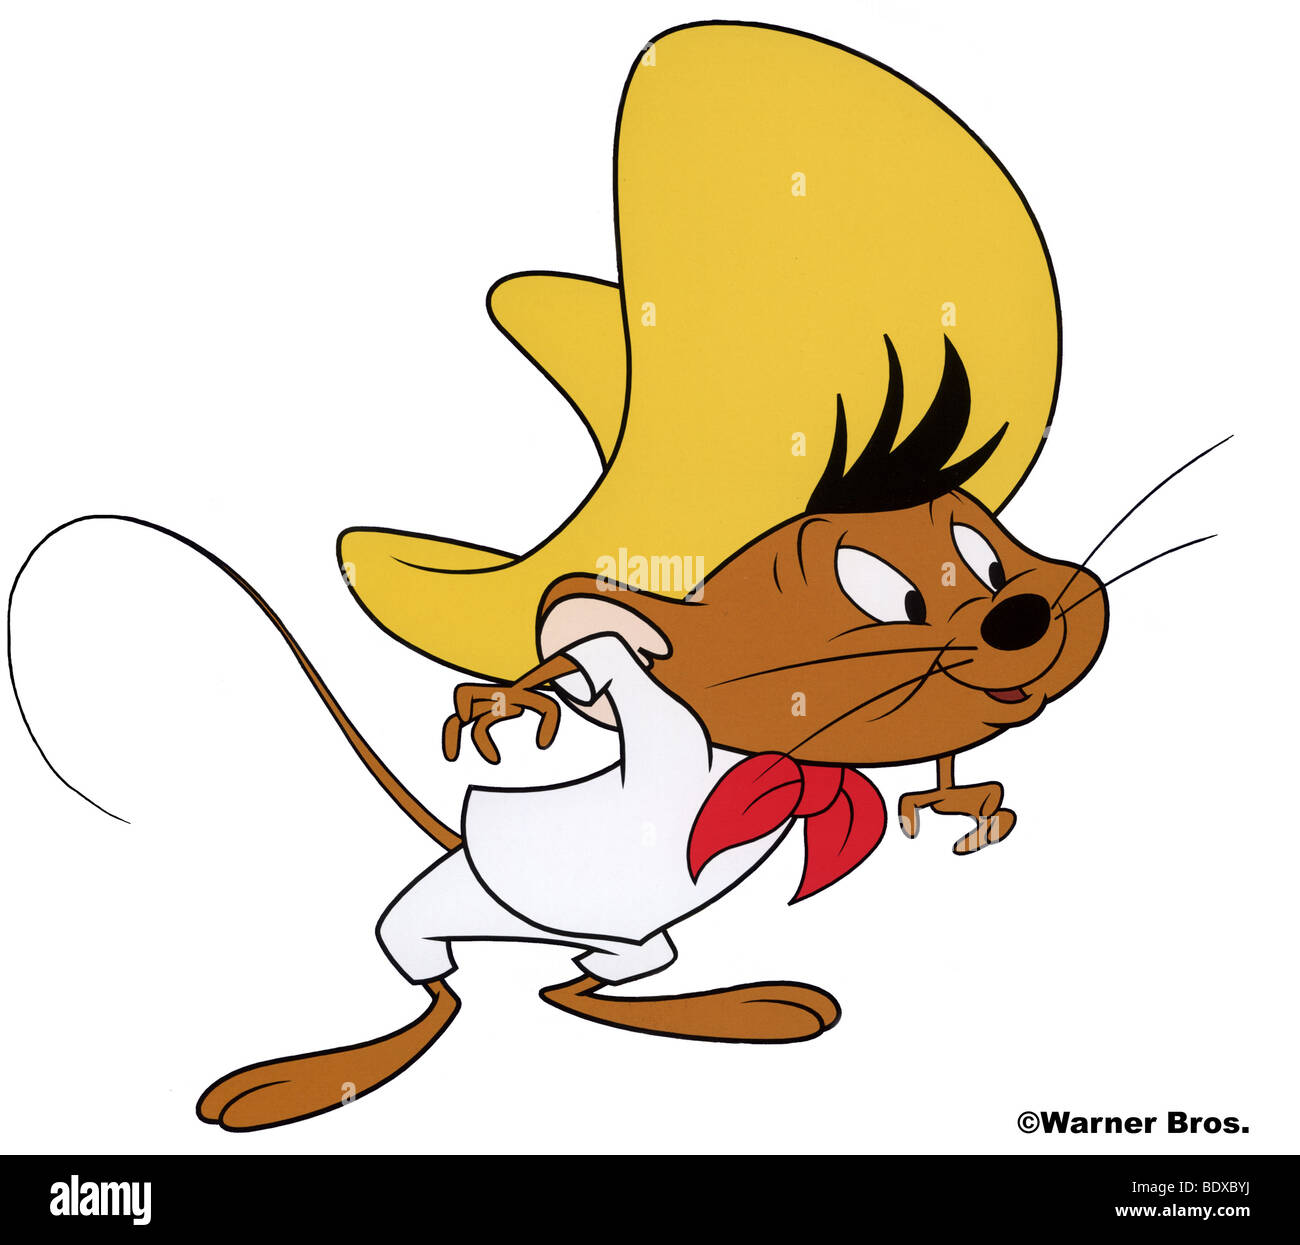 SPEEDY GONZALES - Warner Bros personaggio dei fumetti Foto Stock